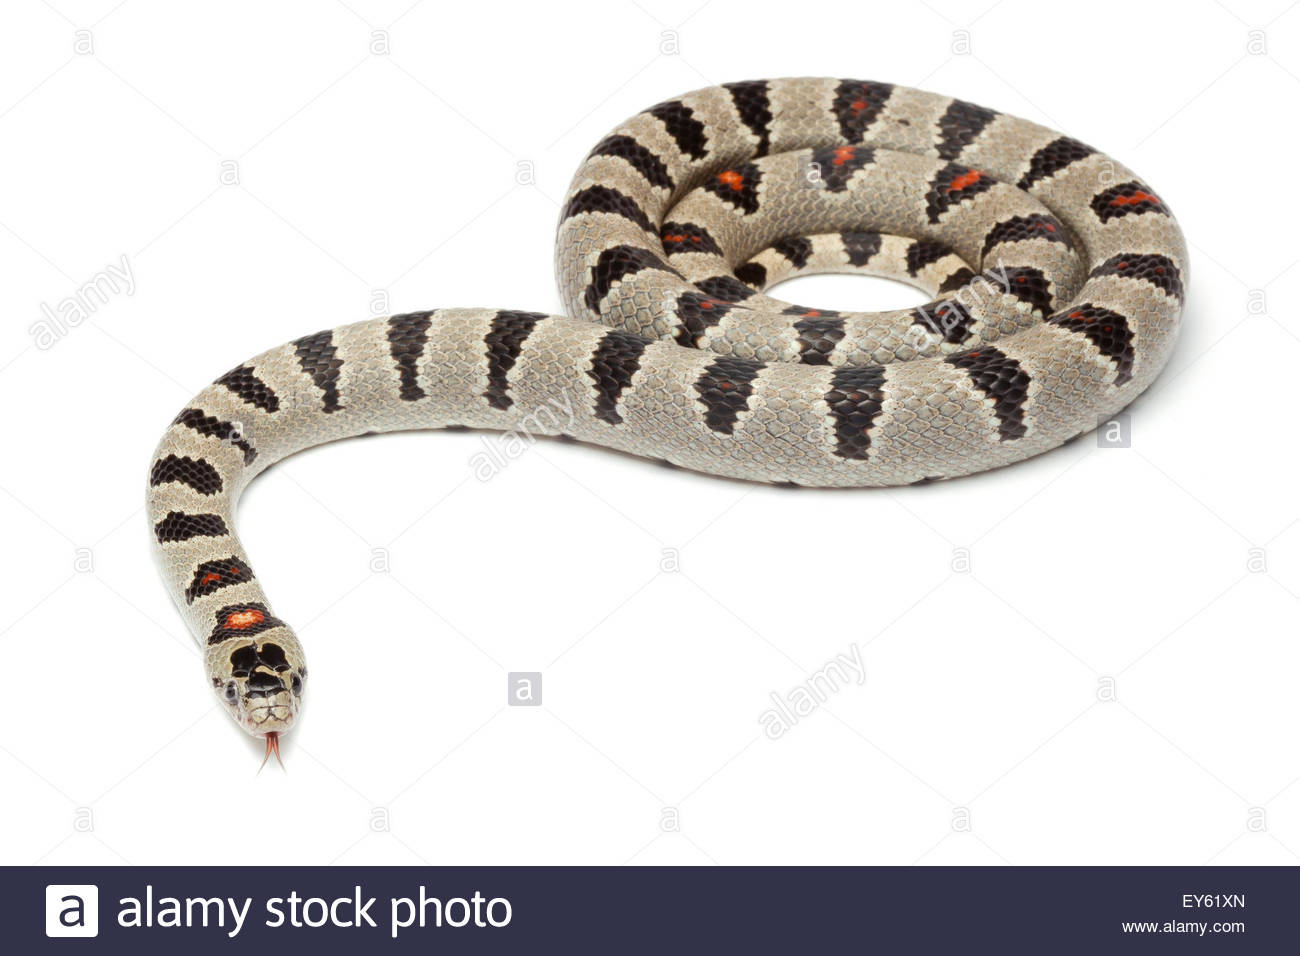 Durango King Snake On White Background Stock Photo